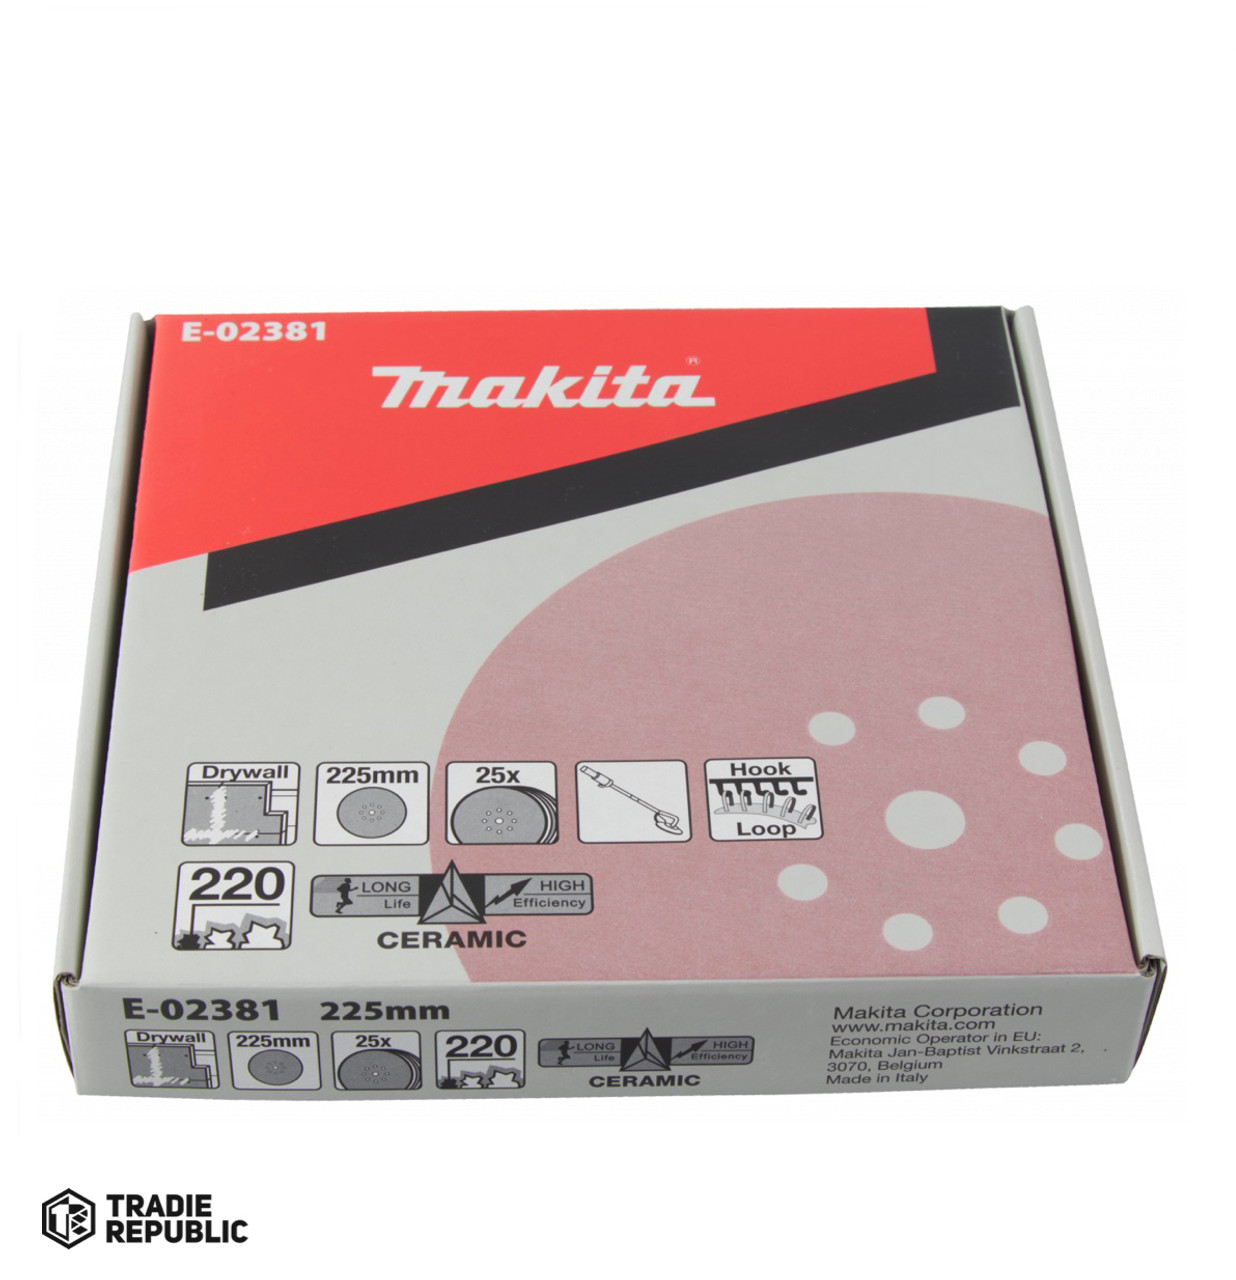 E-02381 Makita Sanding Disc 220G For DSL800